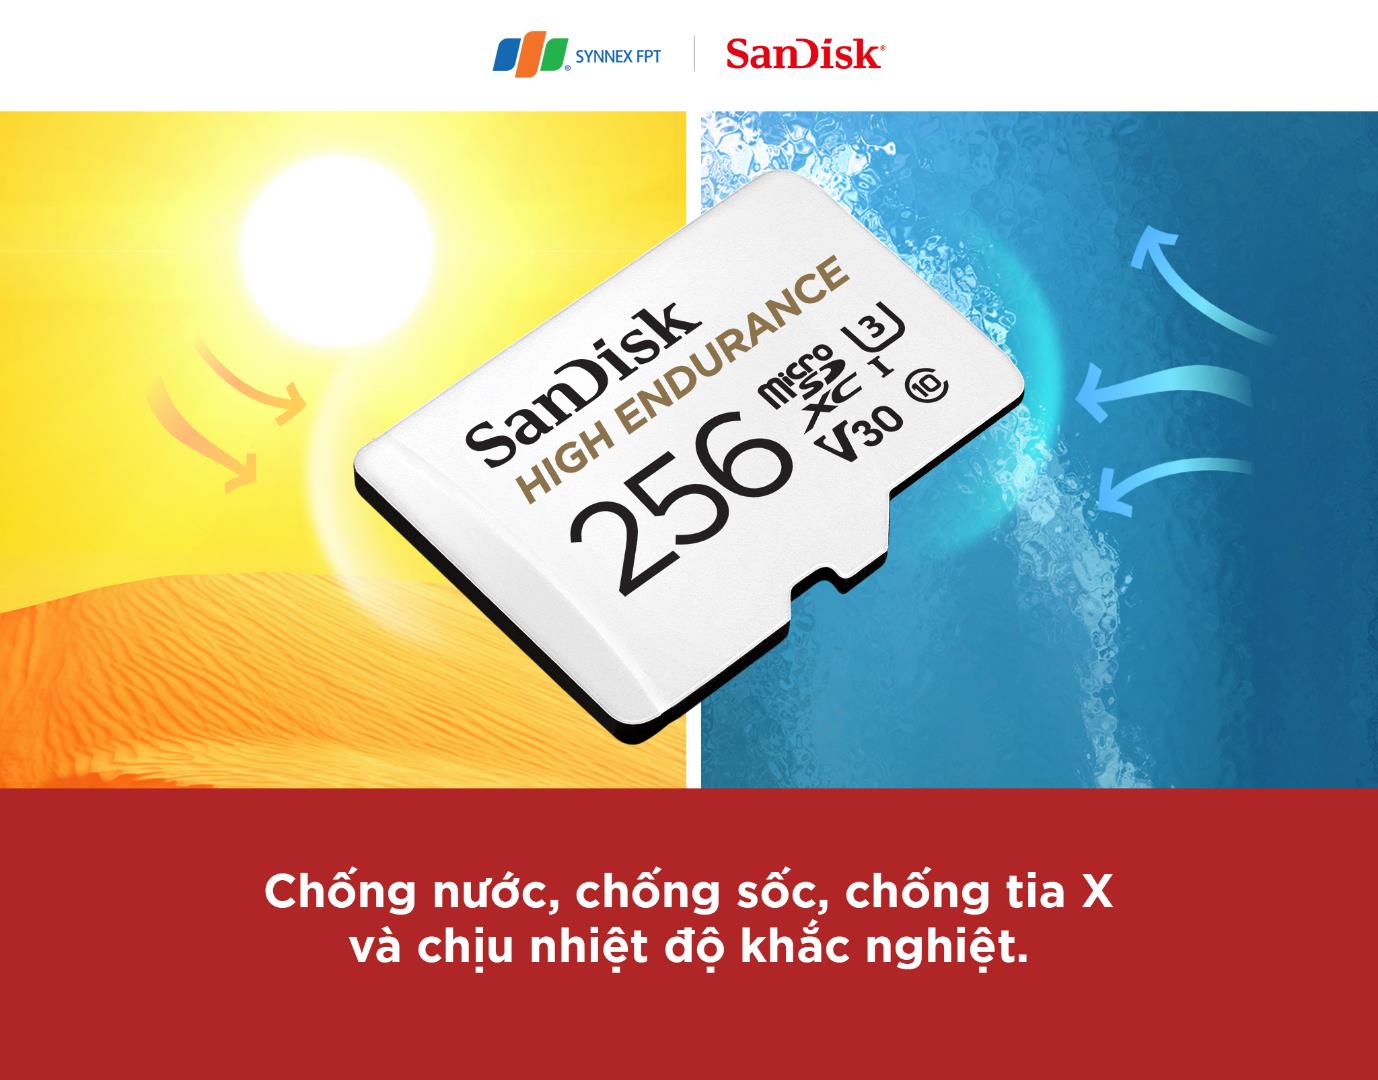 SanDisk High Endurance: Những thông số ấn tượng cho một thẻ ghi hình - Ảnh 1.